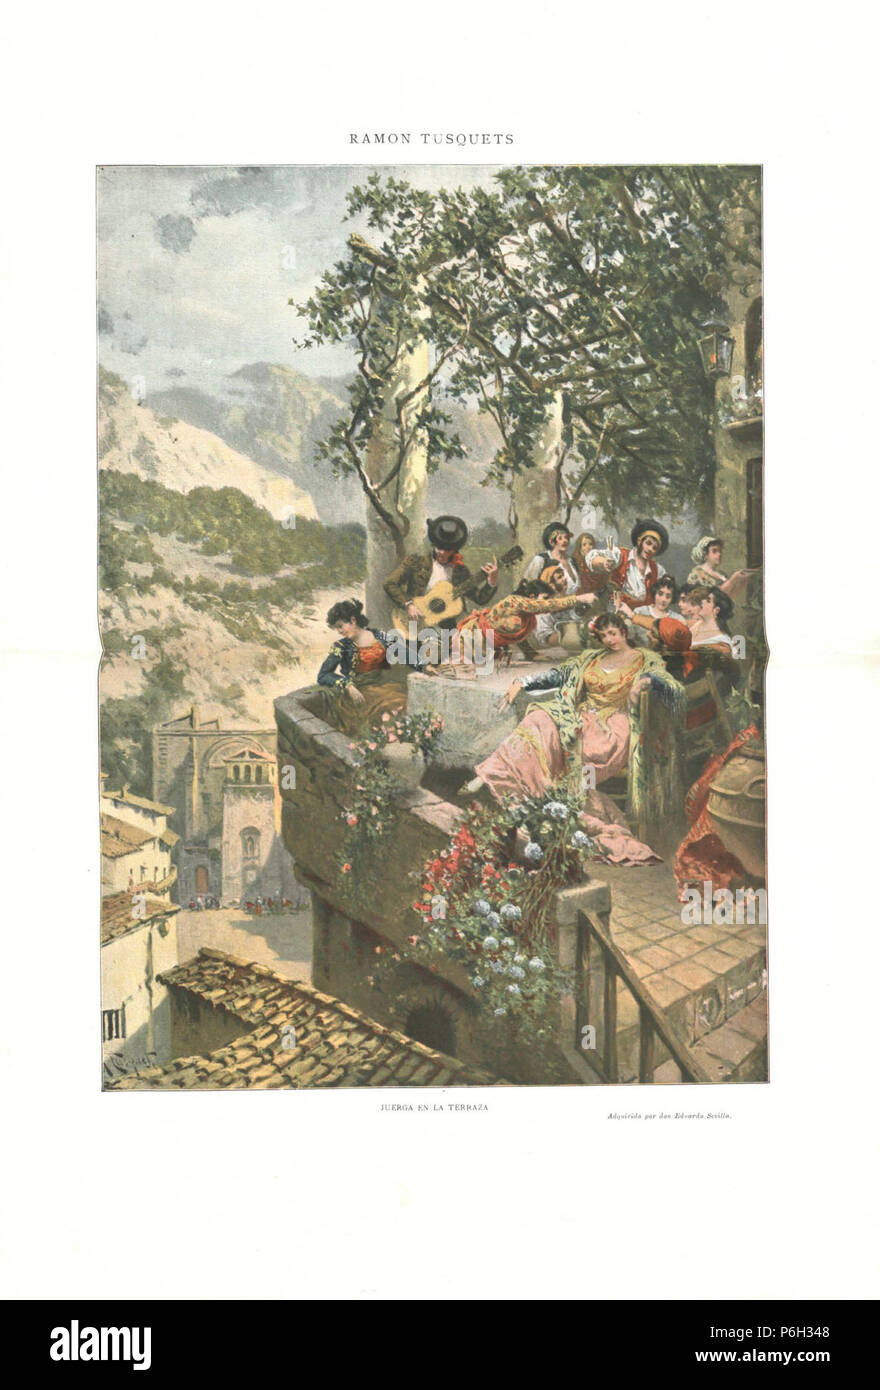 1904, Álbum Salón, Juerga en la terraza, Ramon Tusquets. Foto Stock